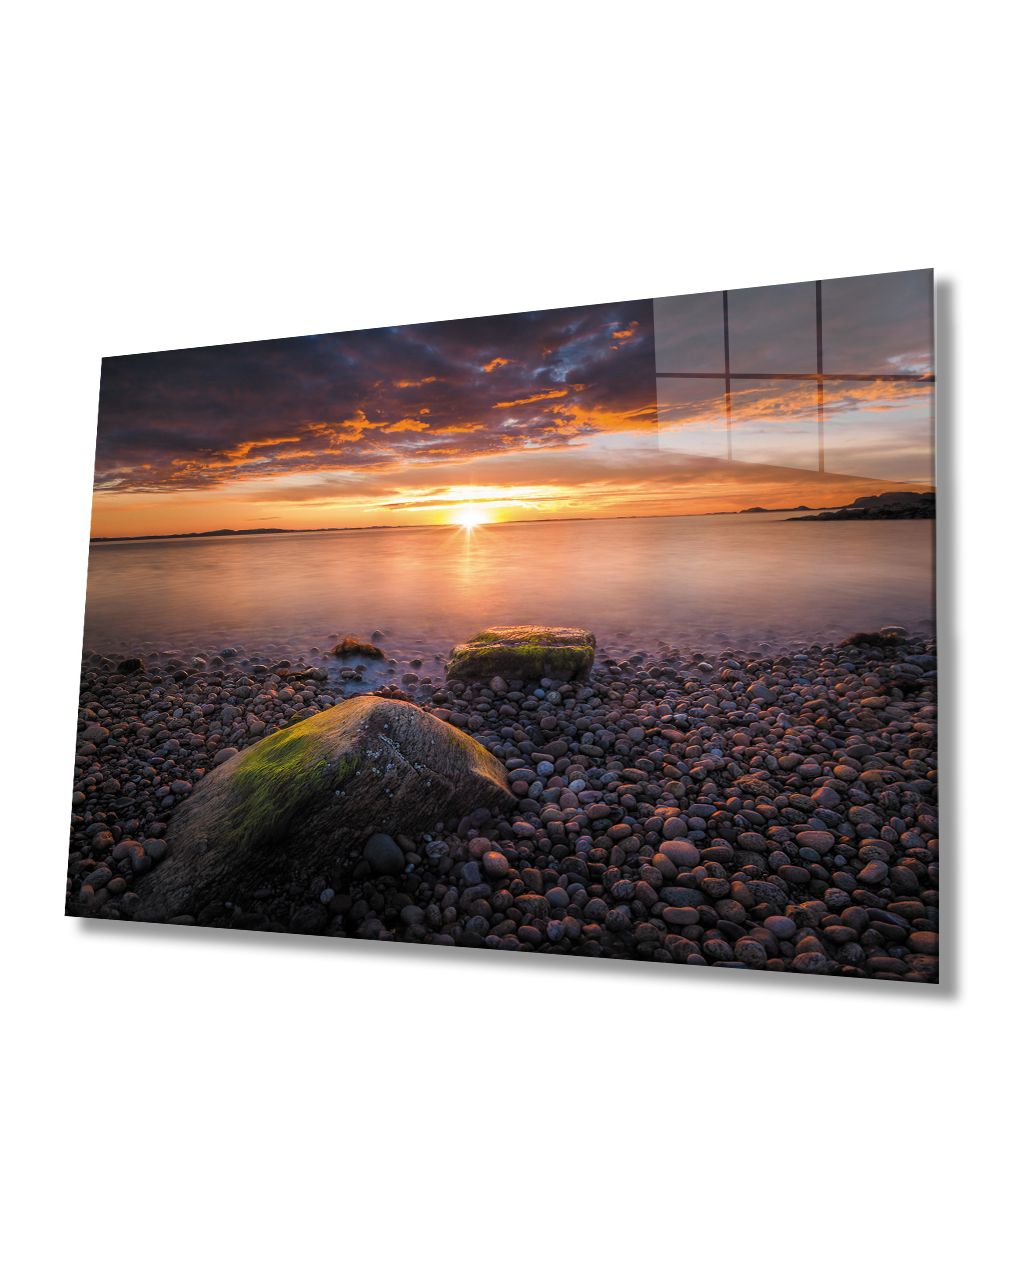 Deniz Taşlar Gün Batımı Cam Tablo  4mm Dayanıklı Temperli Cam Sea Stones Sunset Glass Table 4mm Durable Tempered Glass